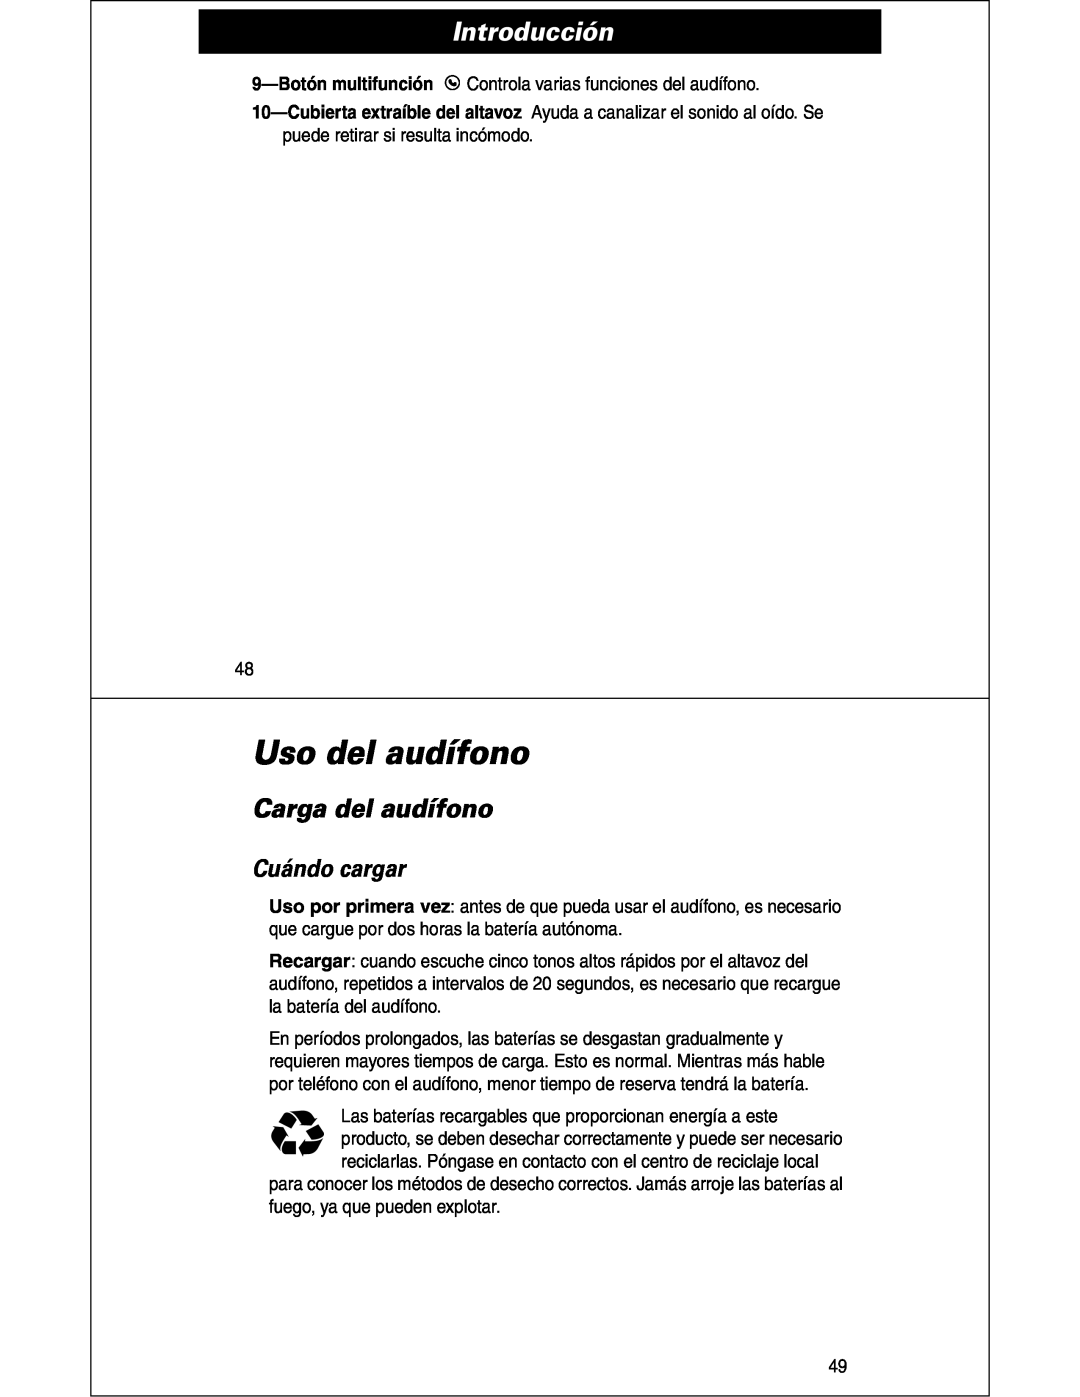 Motorola HS810 manual Uso del audífono, Carga del audífono, Cuándo cargar, Introducción 